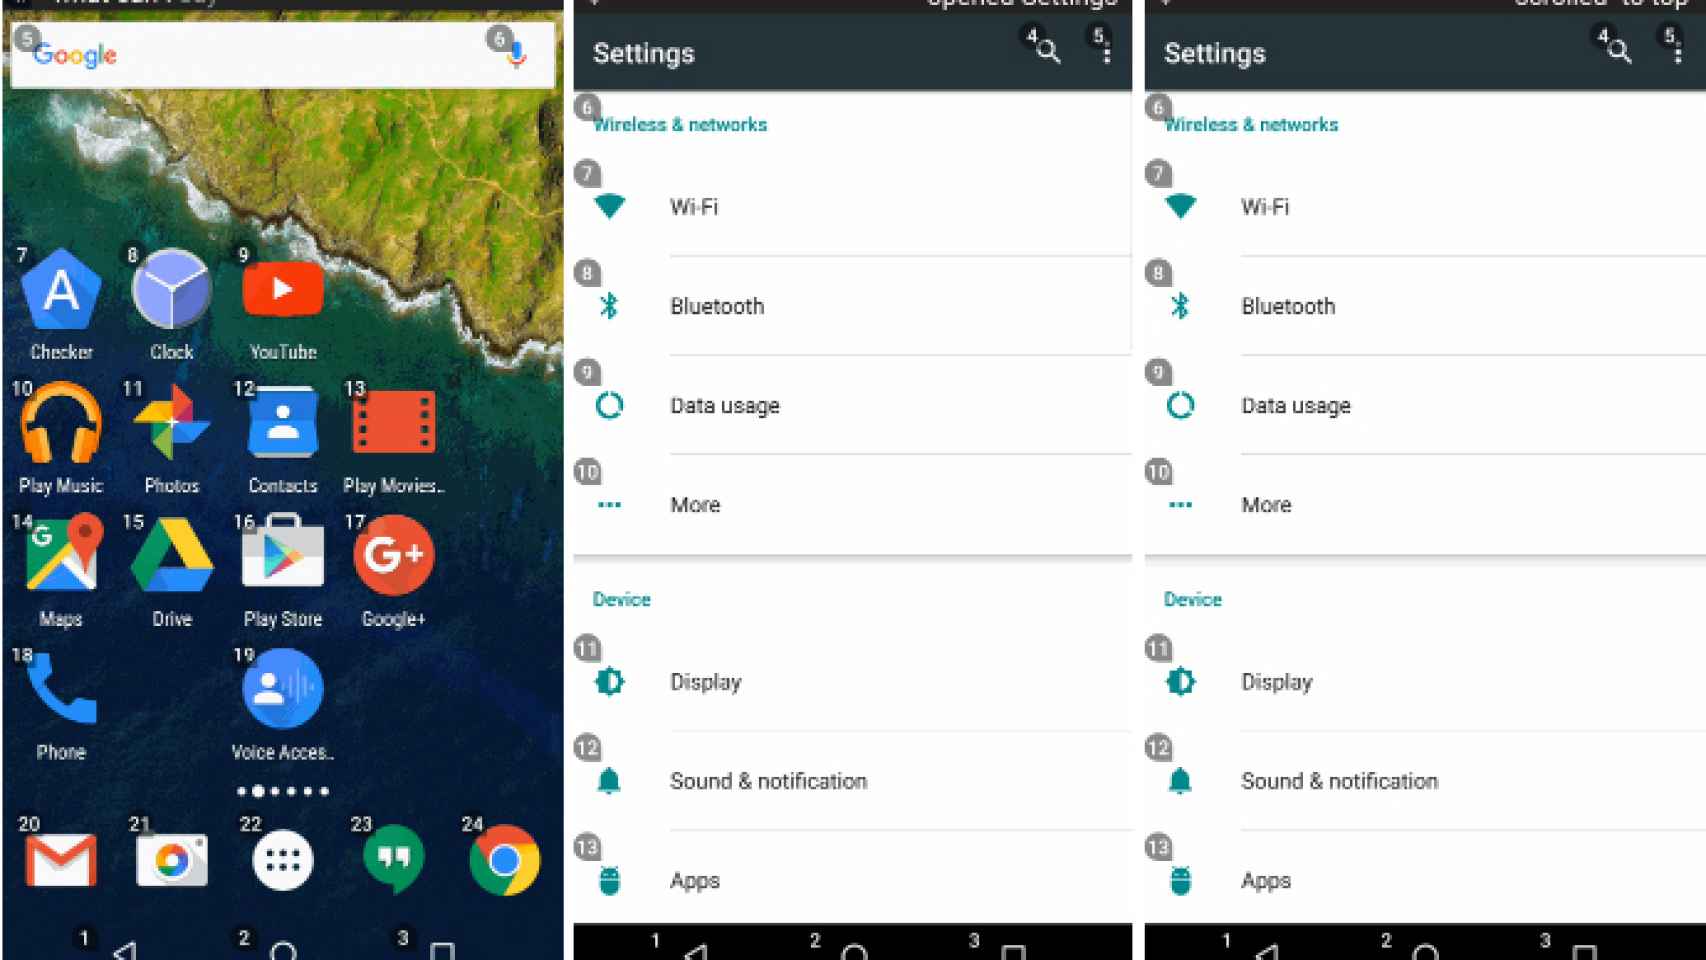 Google Voice Access, hemos probado el nuevo control por voz de Android